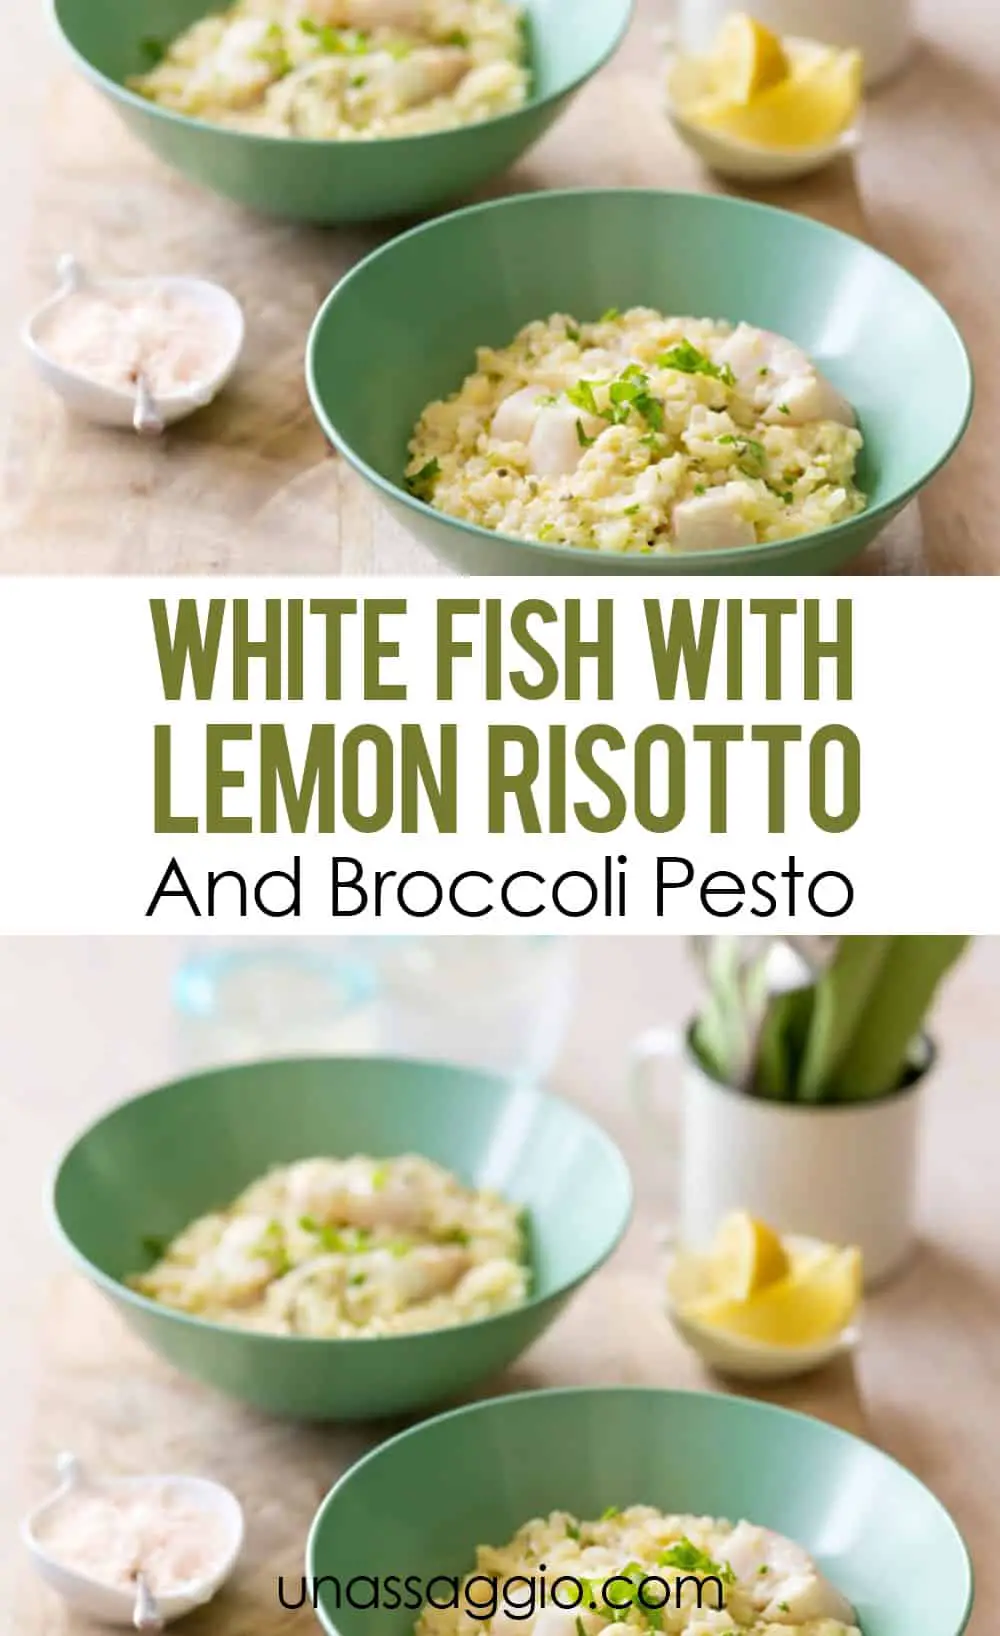 WHITE FISH WITH LEMON RISOTTO & BROCCOLI PESTO